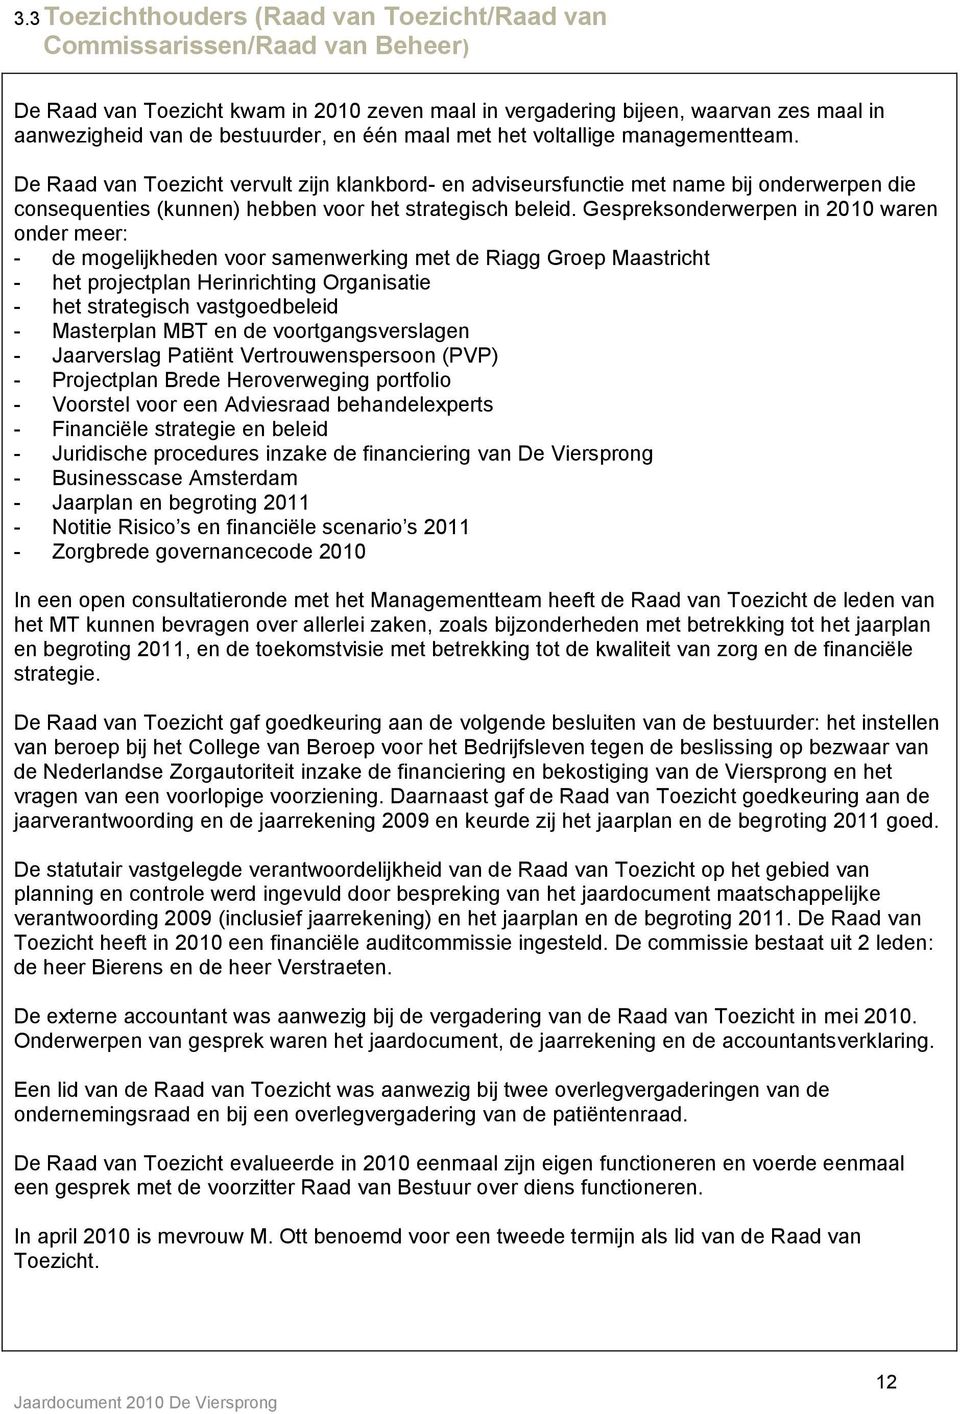 Gespreksonderwerpen in 2010 waren onder meer: - de mogelijkheden voor samenwerking met de Riagg Groep Maastricht - het projectplan Herinrichting Organisatie - het strategisch vastgoedbeleid -